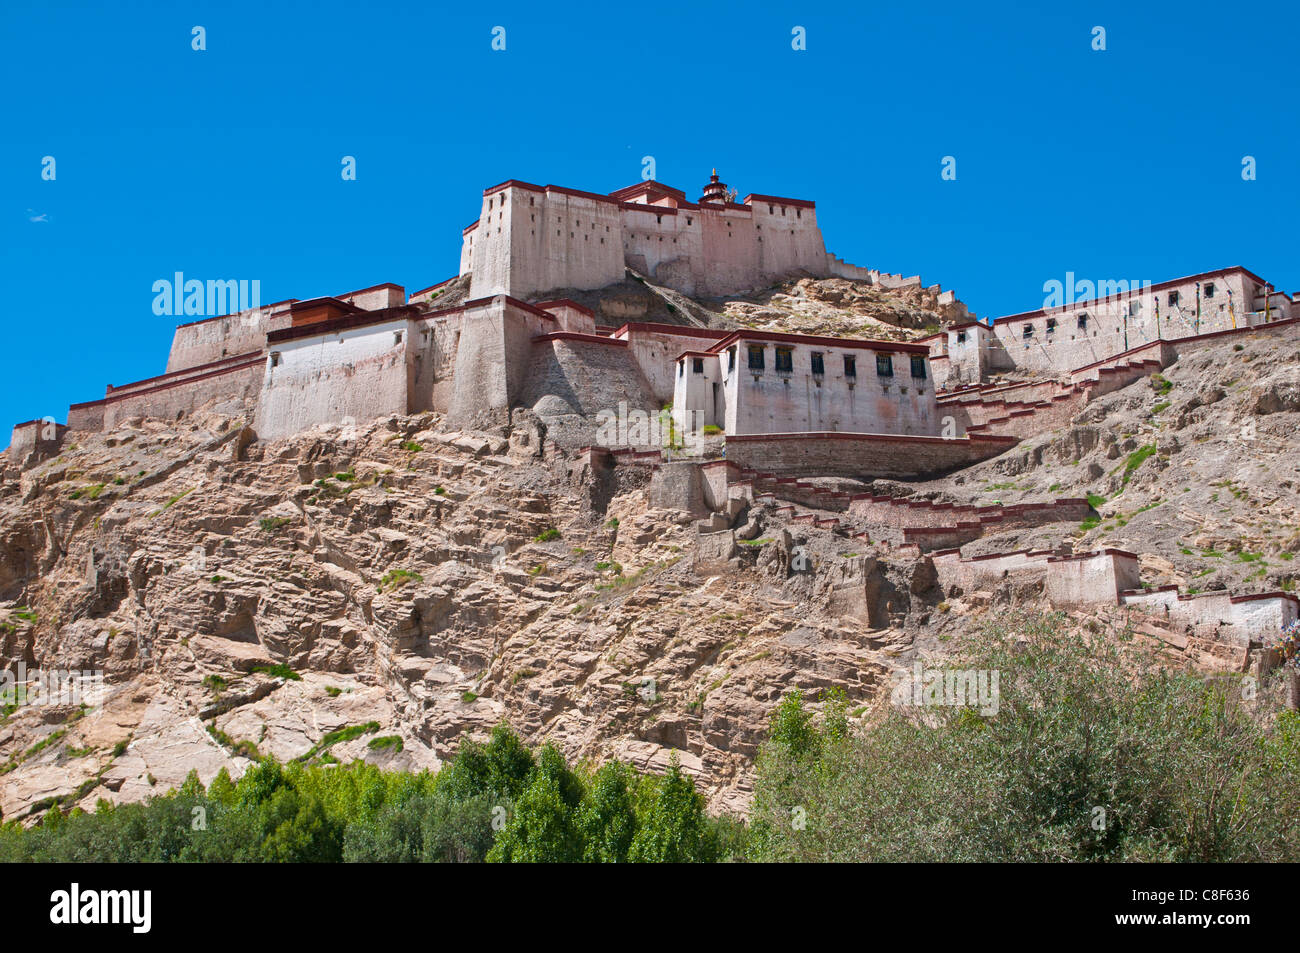 The dzong (fortress) of Gyantse, Tibet, China Stock Photo